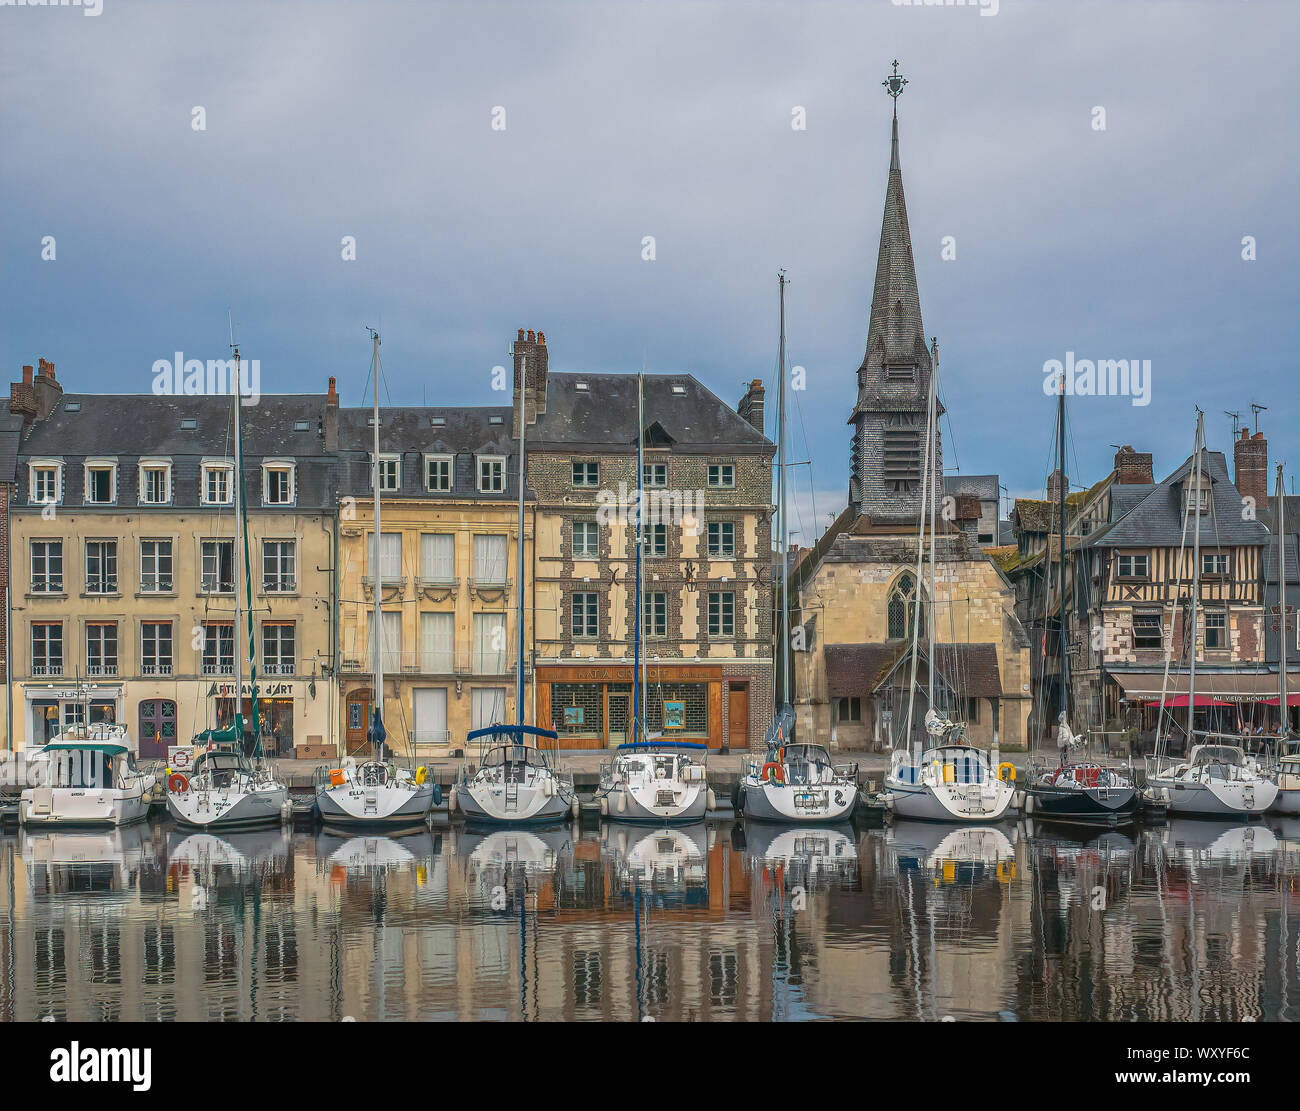 Línea de veleros el muelle debajo de los edificios históricos y la iglesia de Saint Etienne se reflejan en las quietas aguas del viejo puerto de Honfleur, Francia Foto de stock